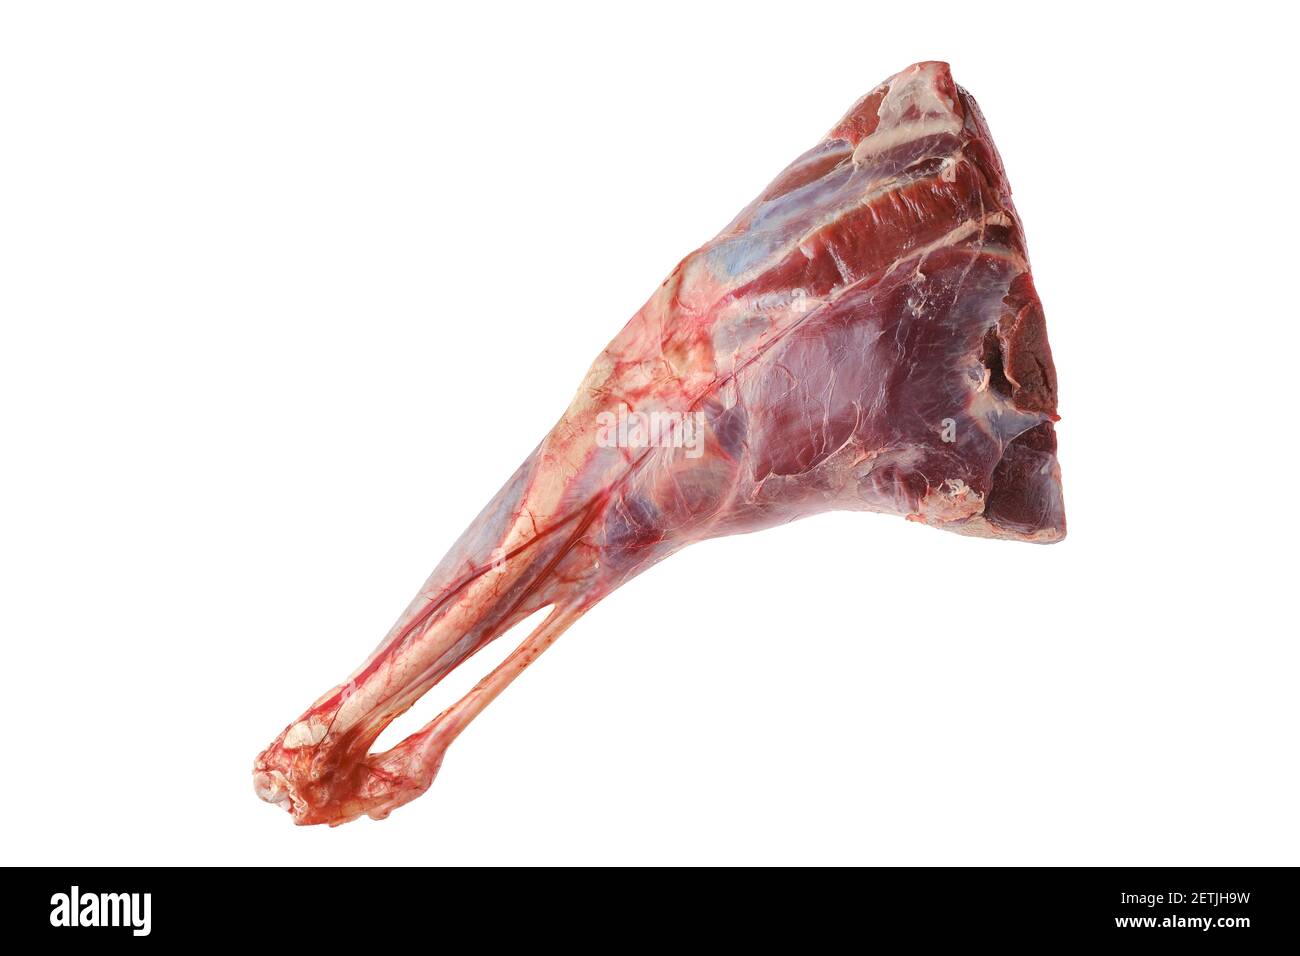 cow leg meat